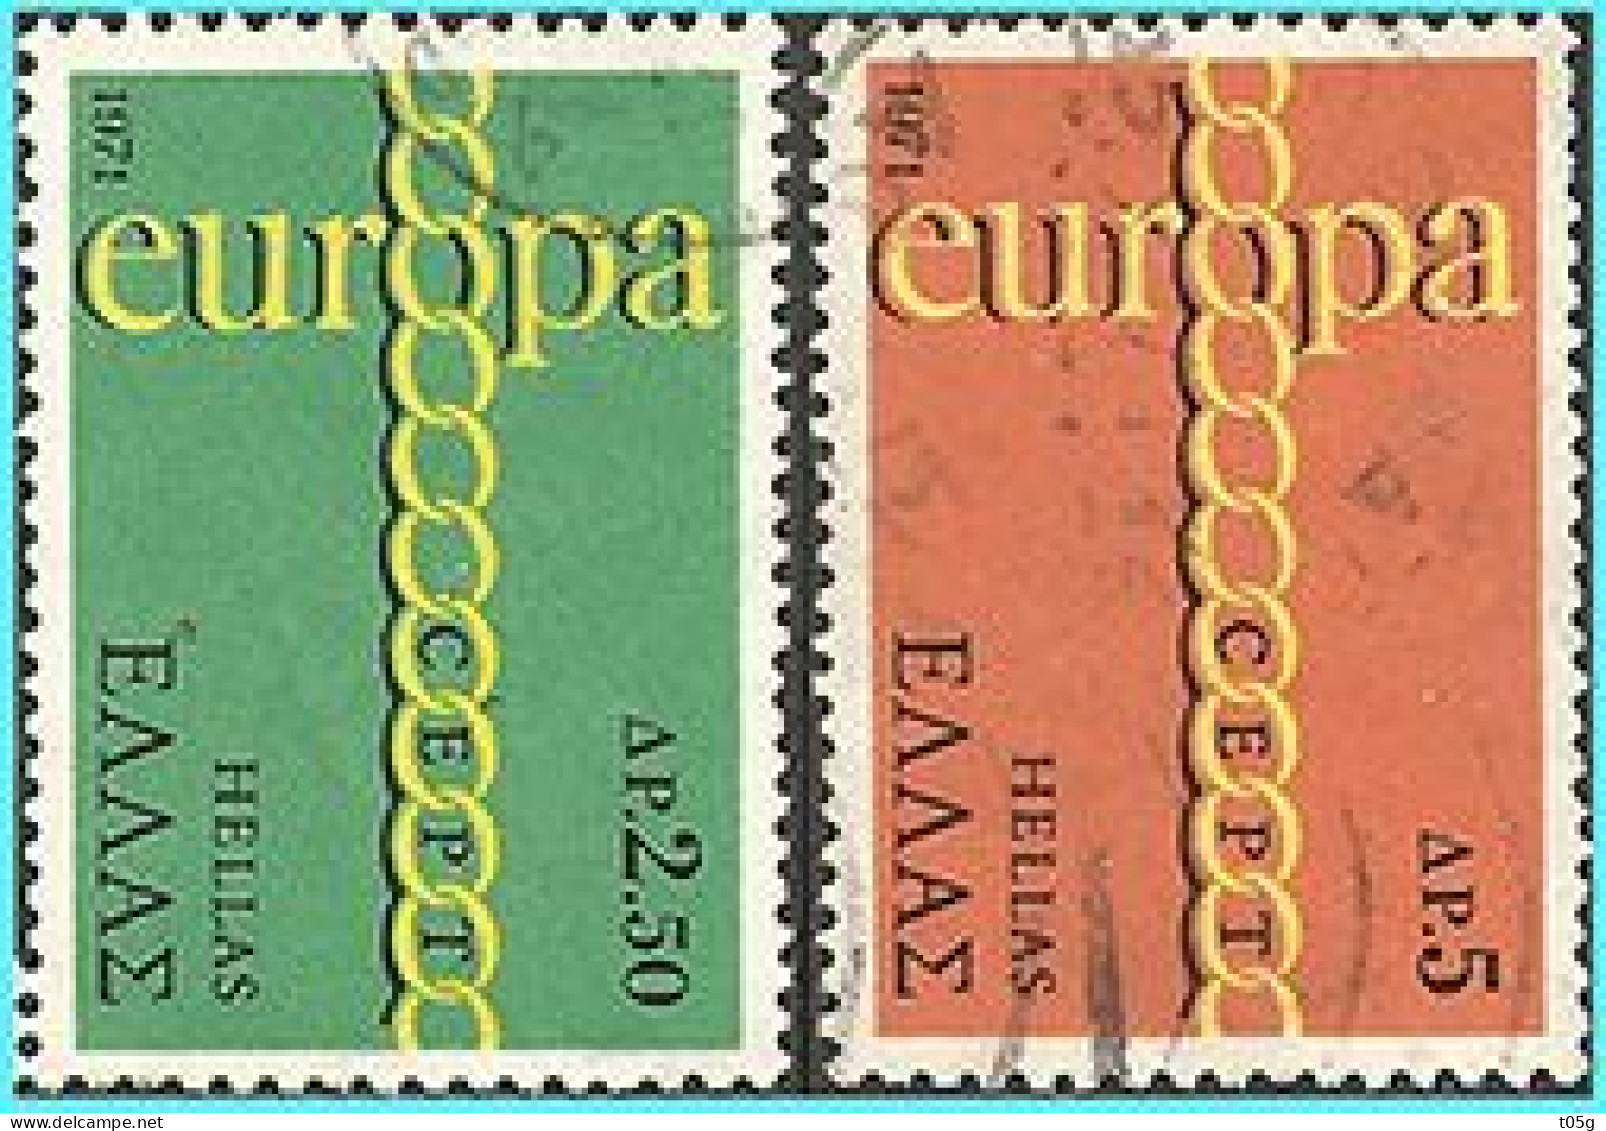 GREECE- GRECE  - HELLAS 1971: RUROPA Compl. Set Used - Gebraucht